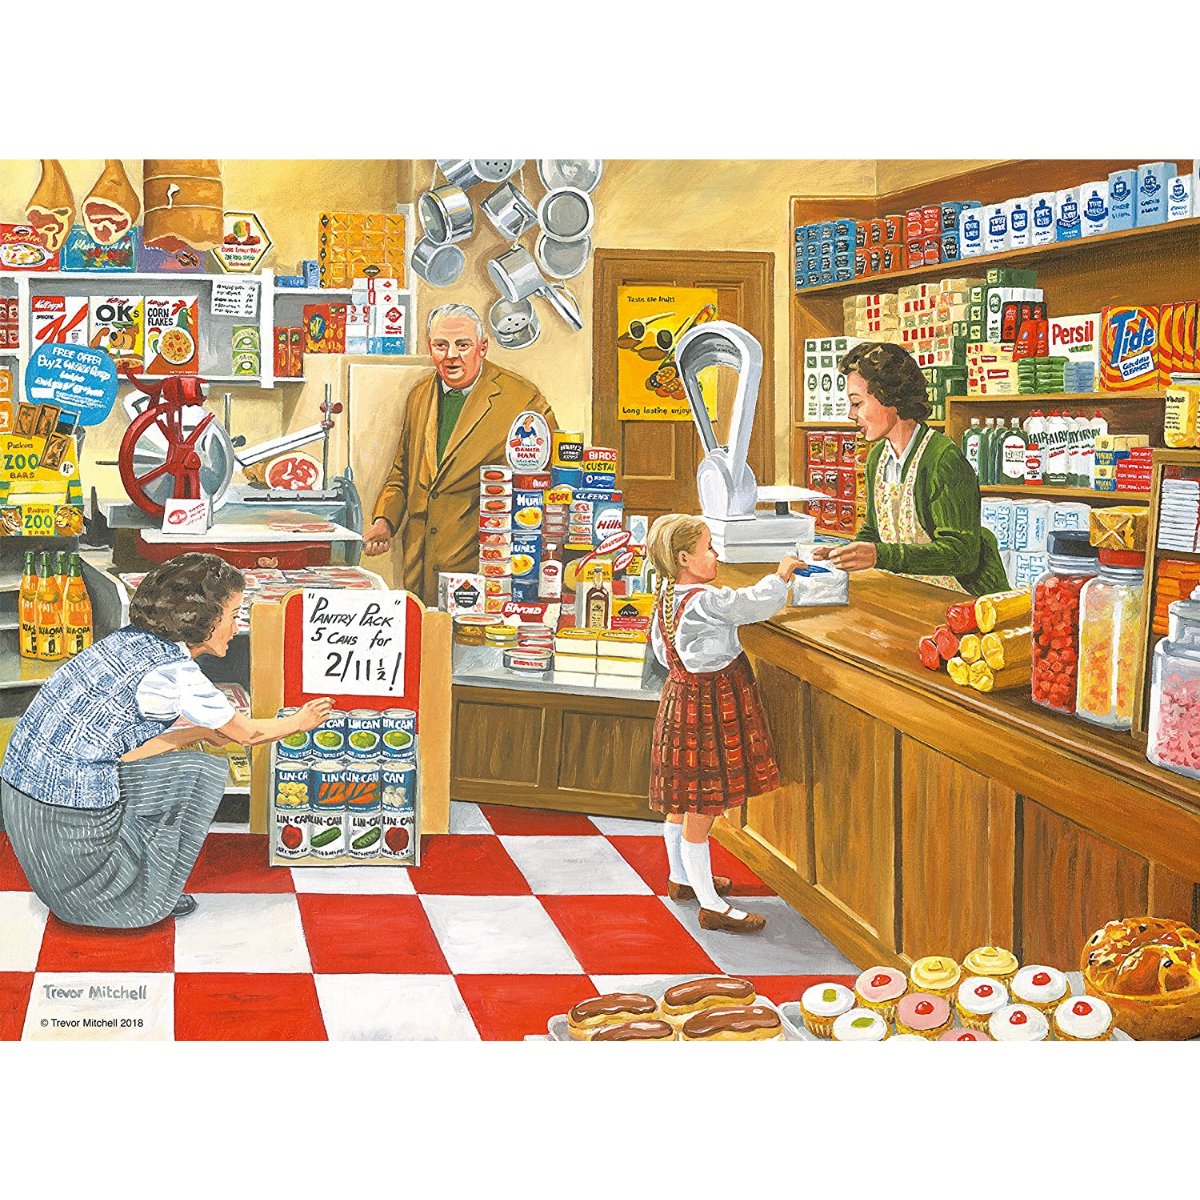 Ravensburger The Corner Shop Jigsaw Puzzle (100 Large Pieces) - Phillips Hobbies